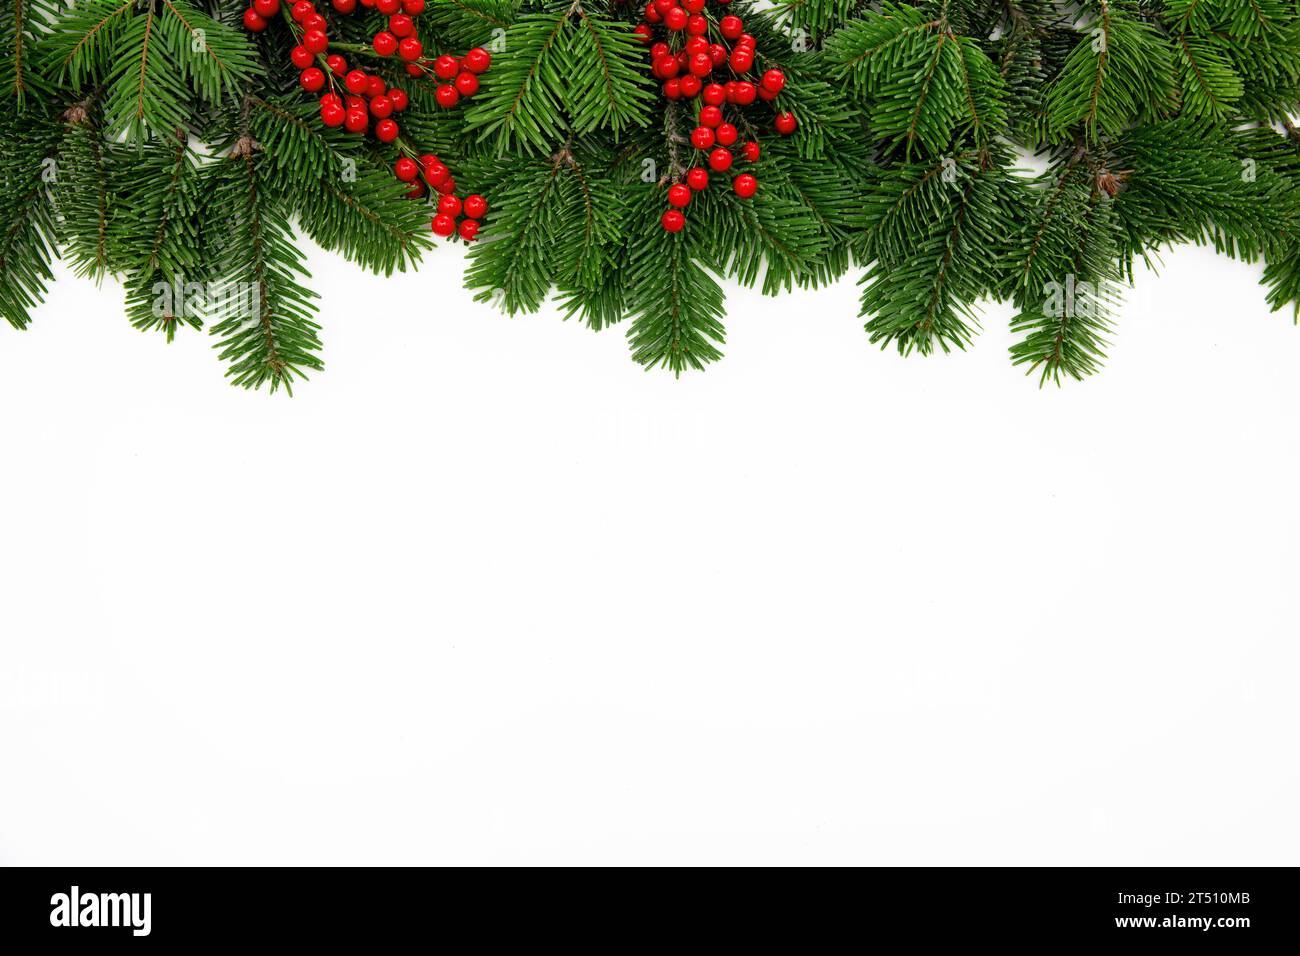 Bordo dell'albero di Natale decorato con bacche rosse isolate su sfondo bianco, modello di biglietto d'auguri Foto Stock